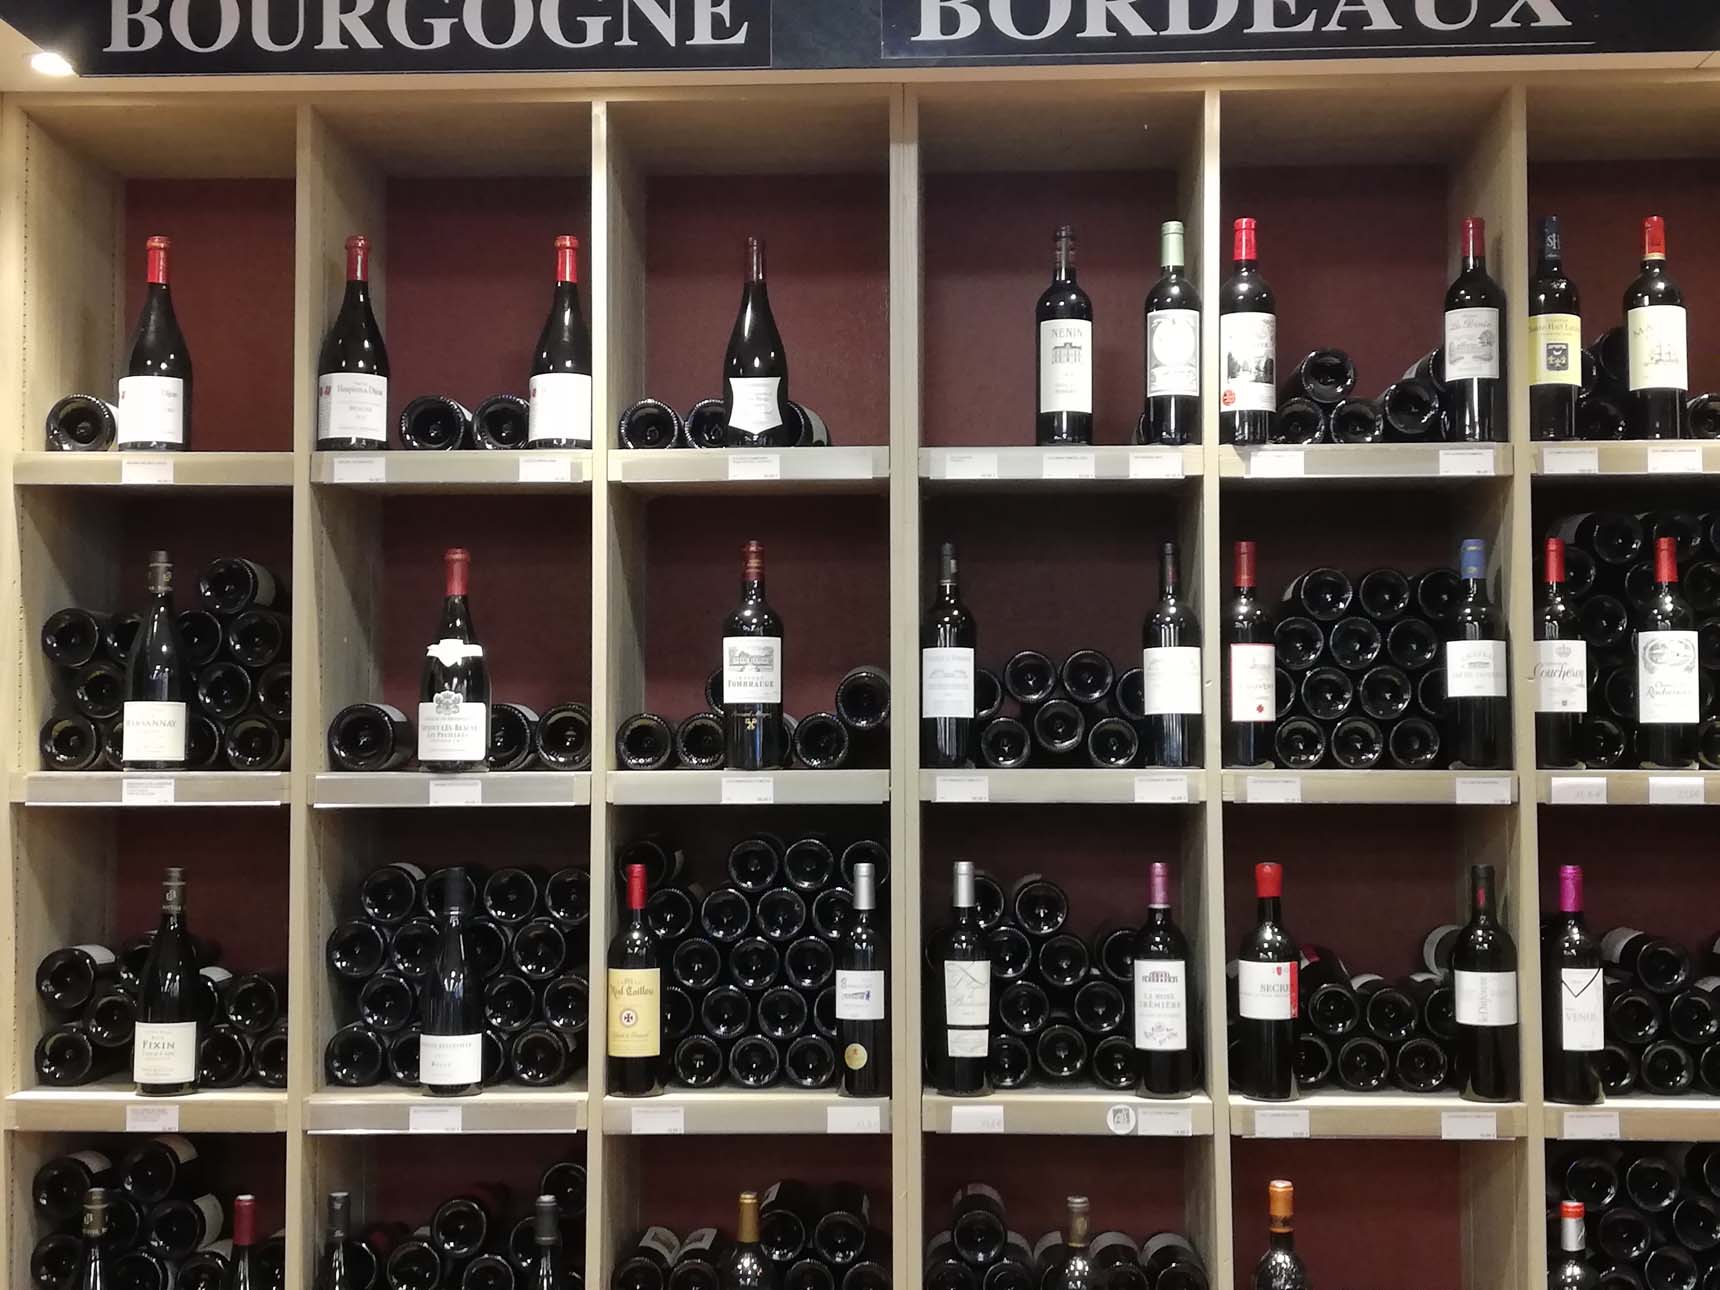 Soirée Dégustation: Découverte des Vins de Bourgogne.